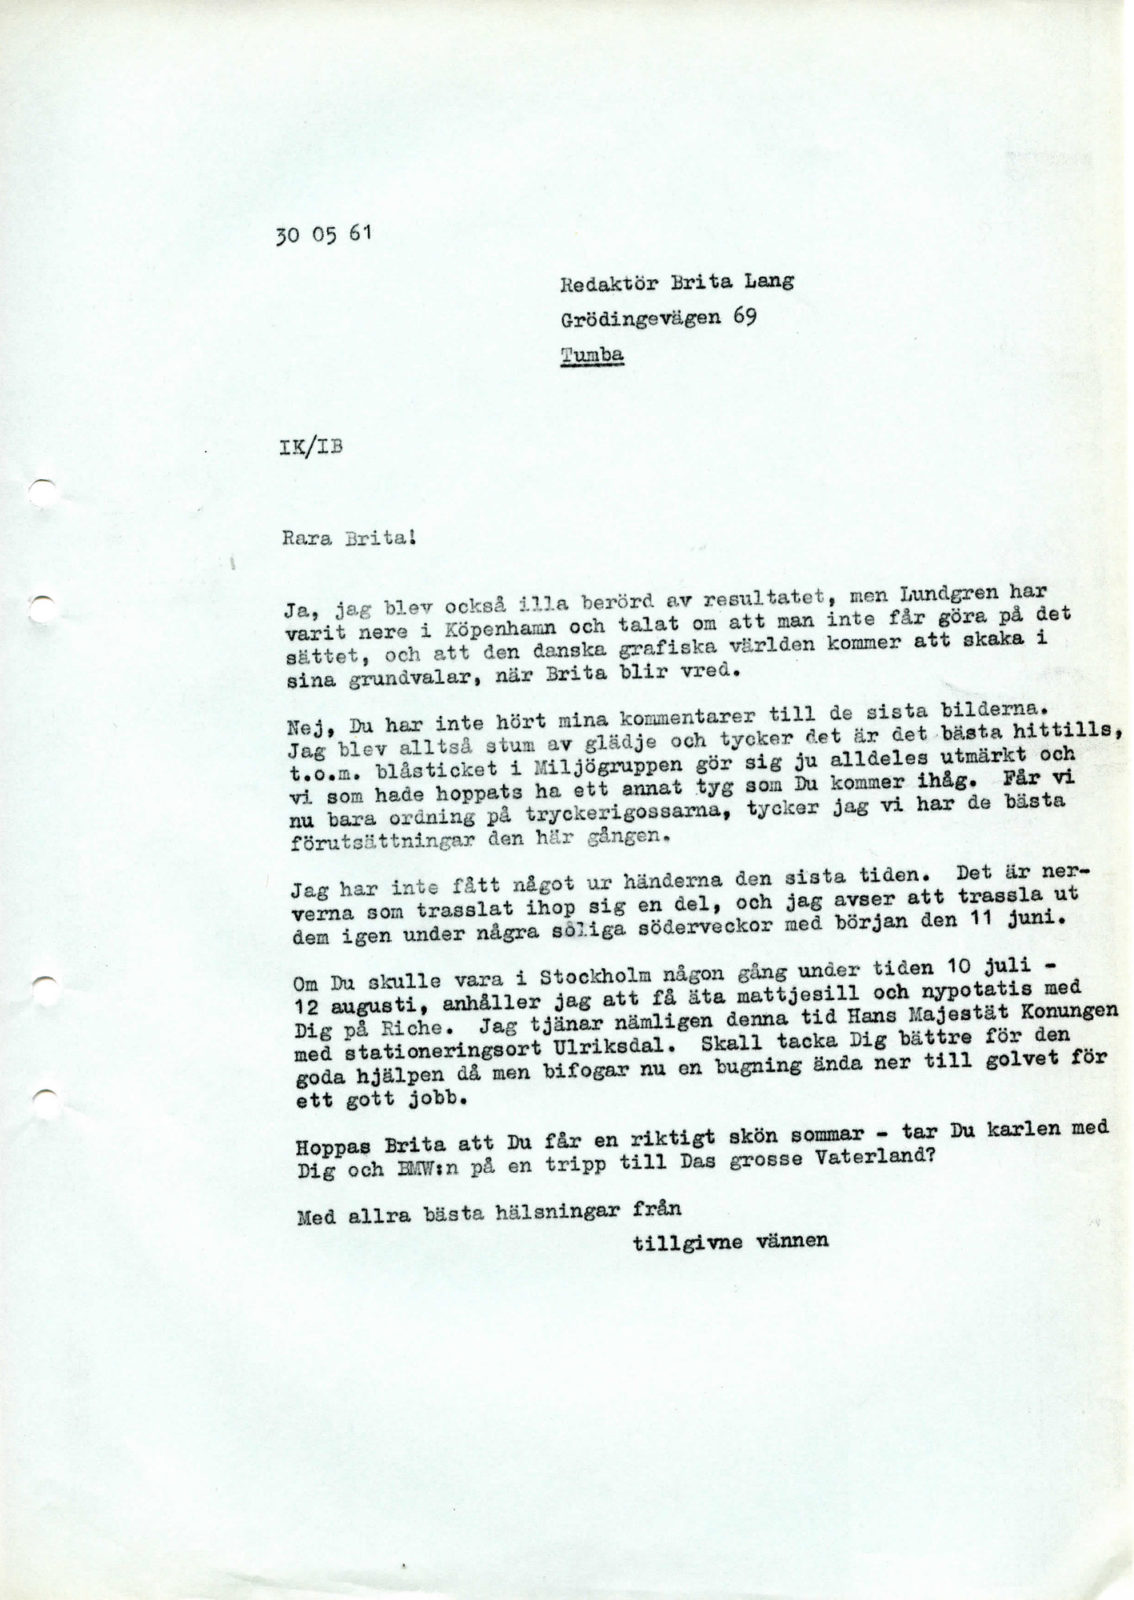 Maskinskrivet brev från Ingvar Kamprad till Brita Lang, 30 maj 1961.